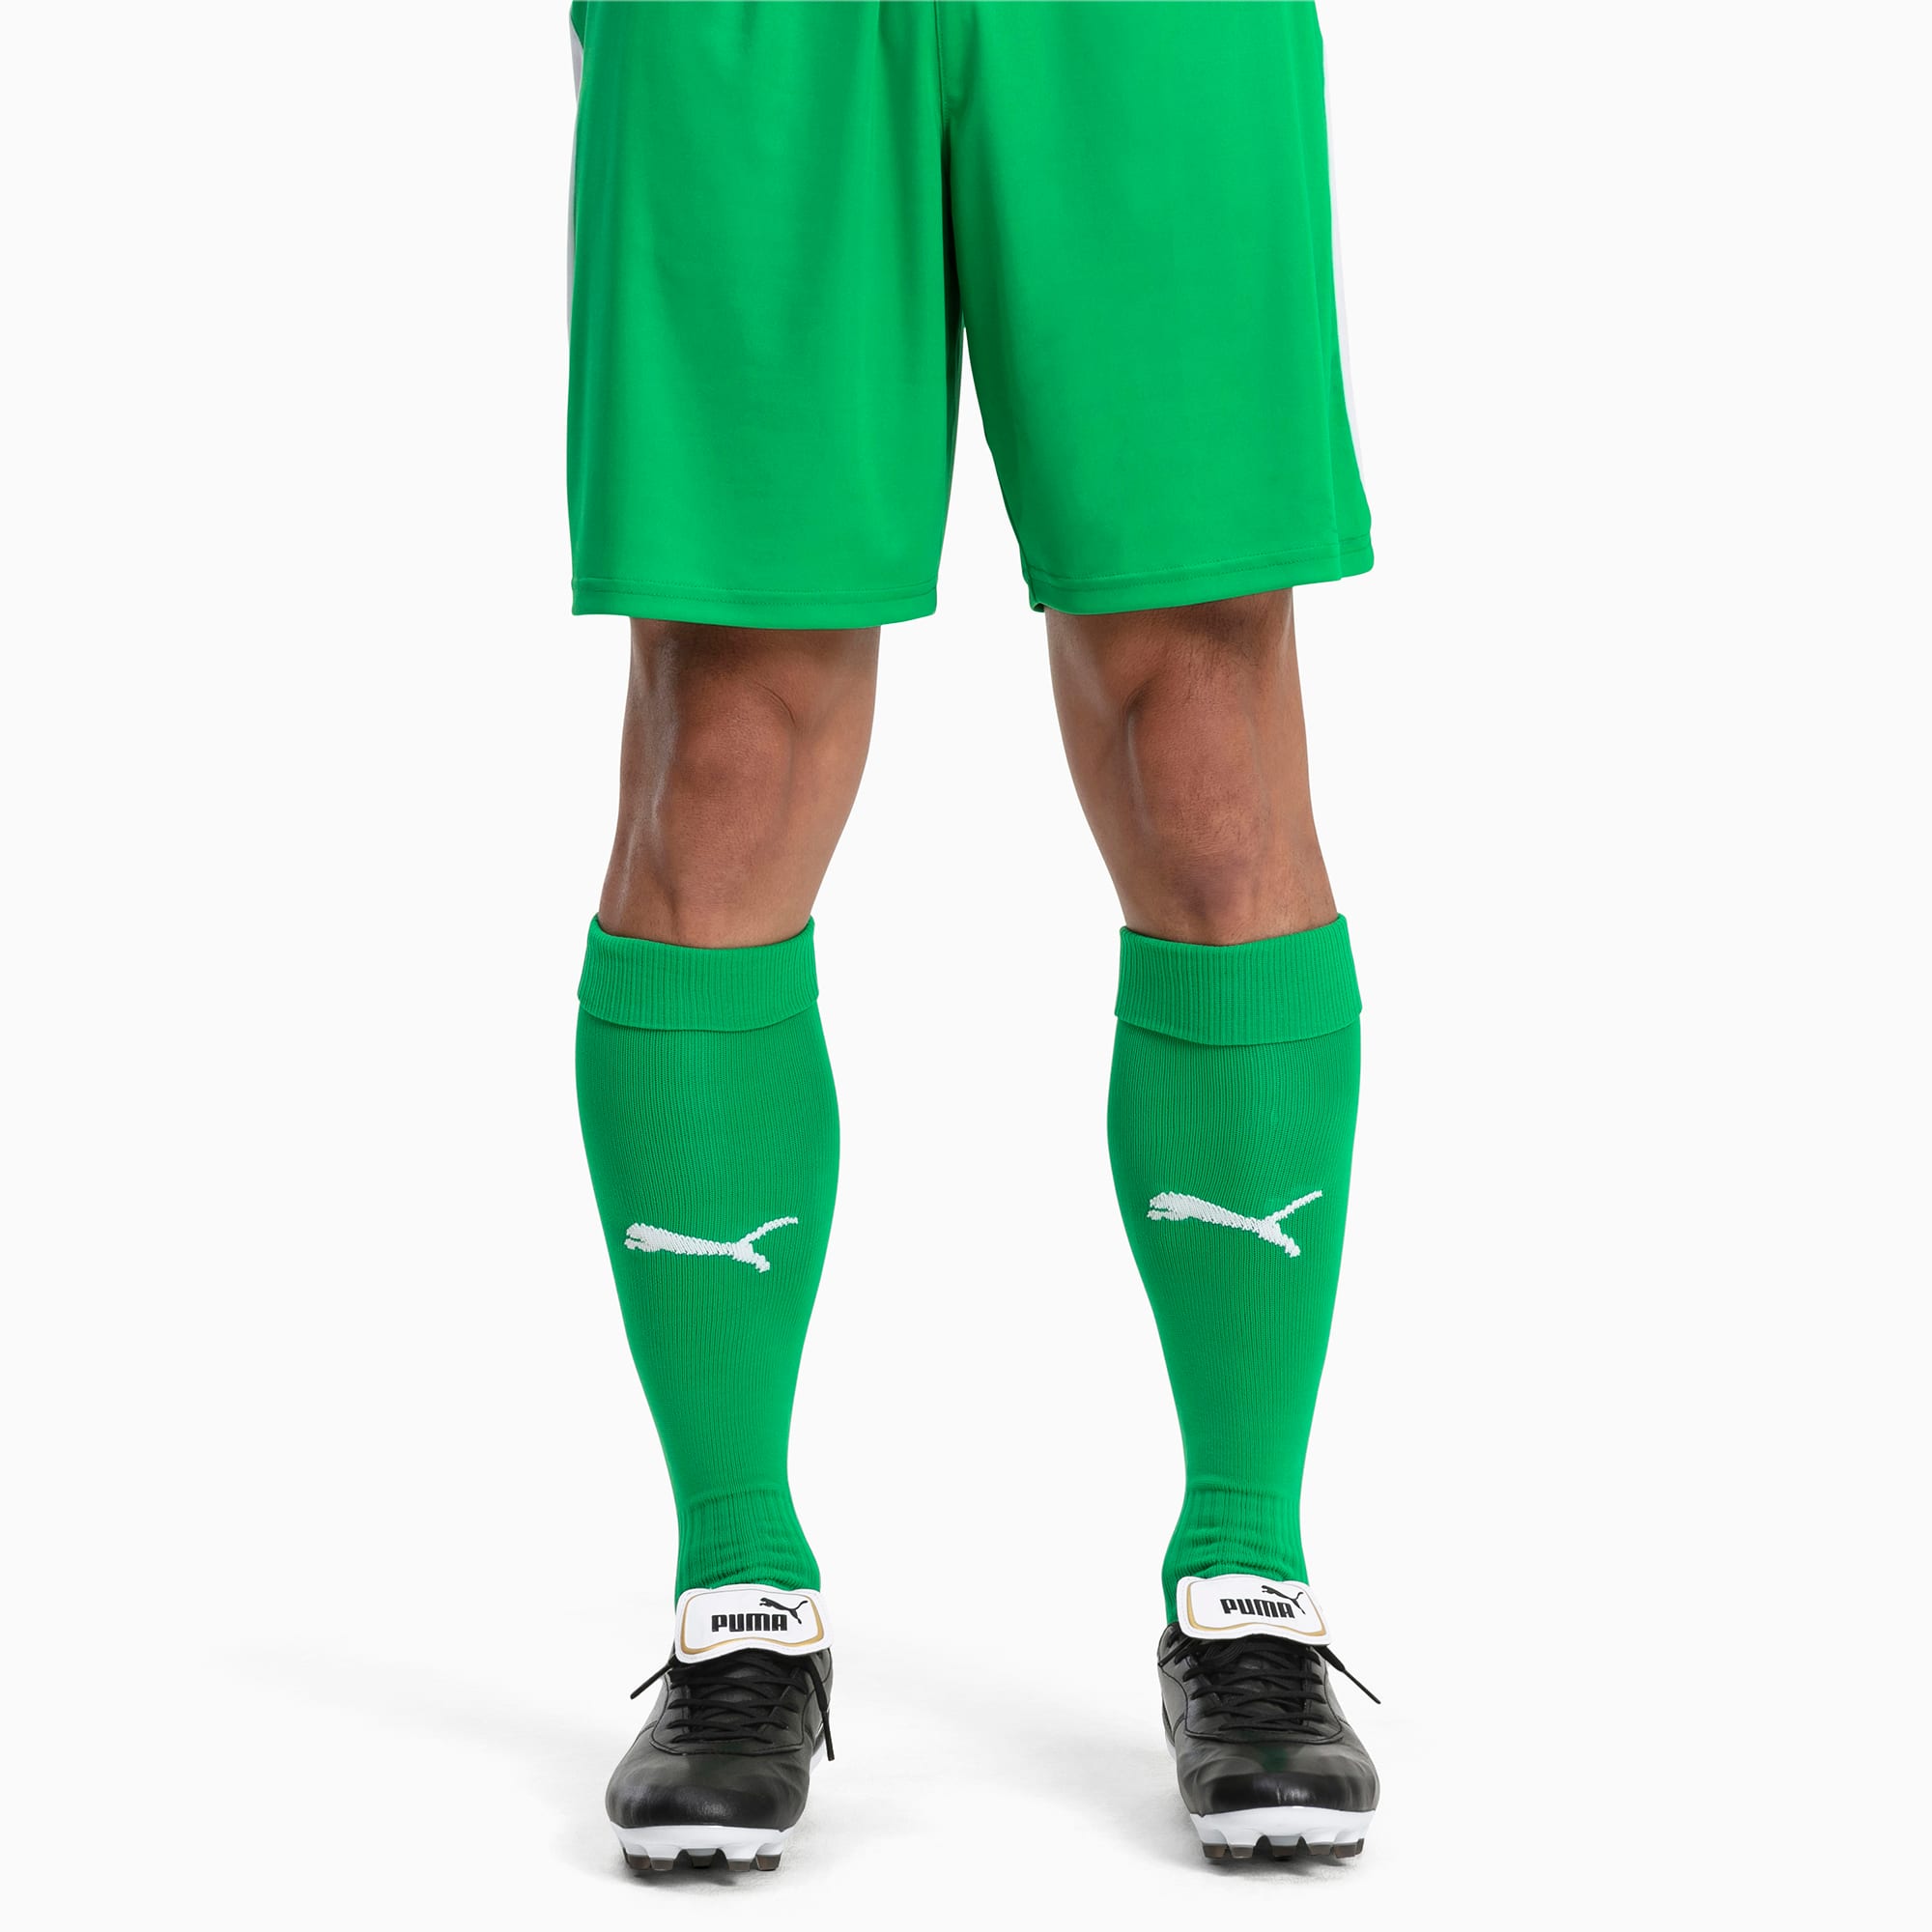 Image of PUMA Fußball Herren LIGA Core Socken | Mit Aucun | Grün/Weiß | Größe: 35-38